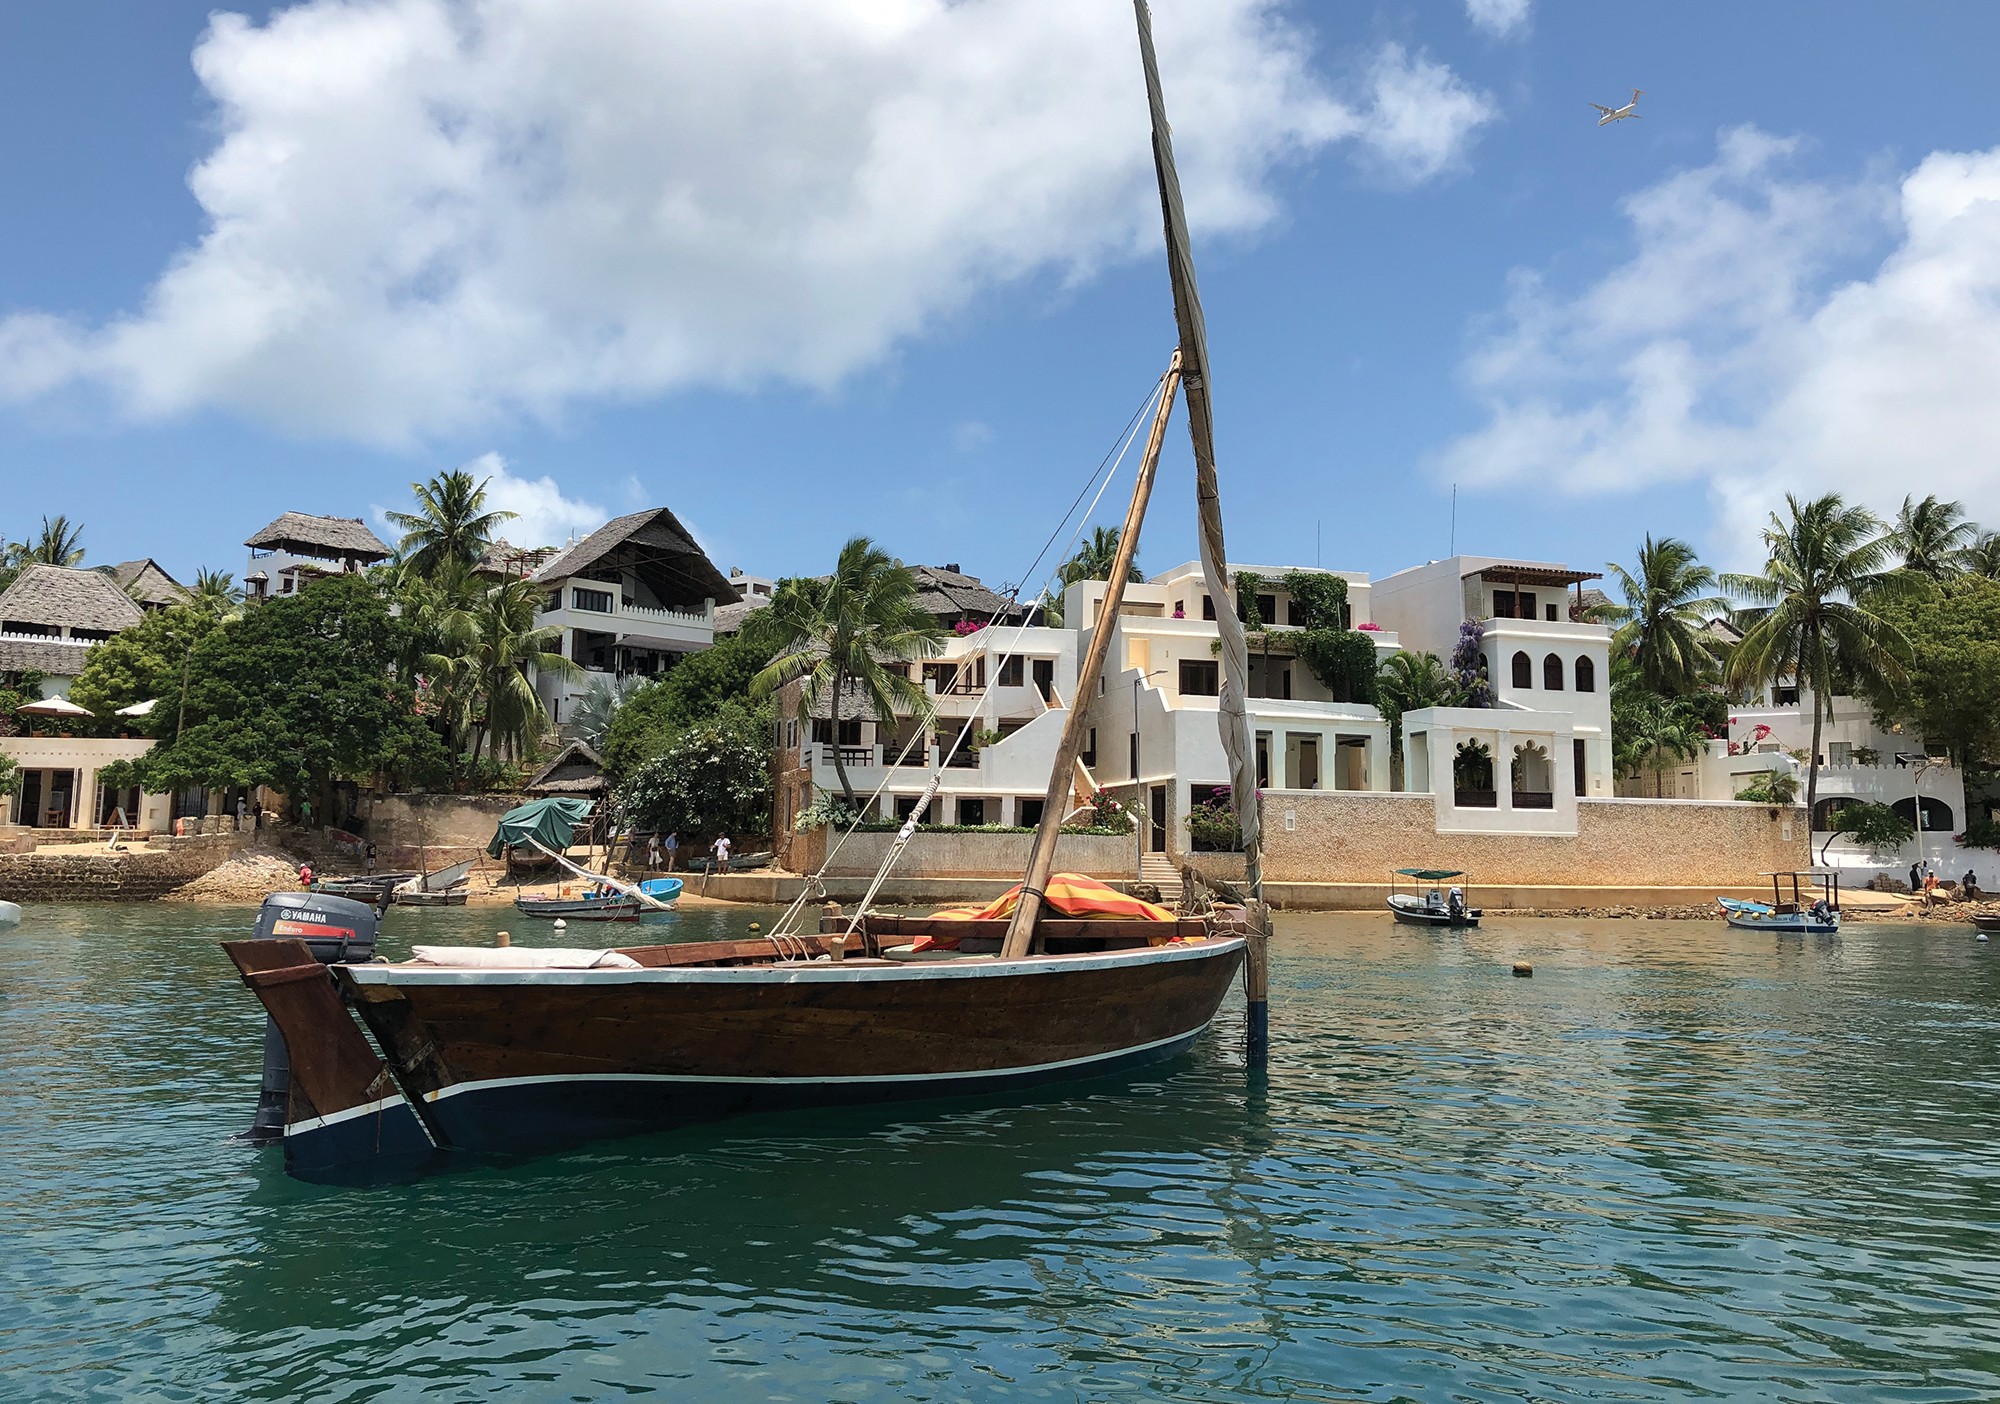 Verdade tropical: O dhow é o transporte utilizado para chegar às ilhas vizinhas  (Foto: divulgação)